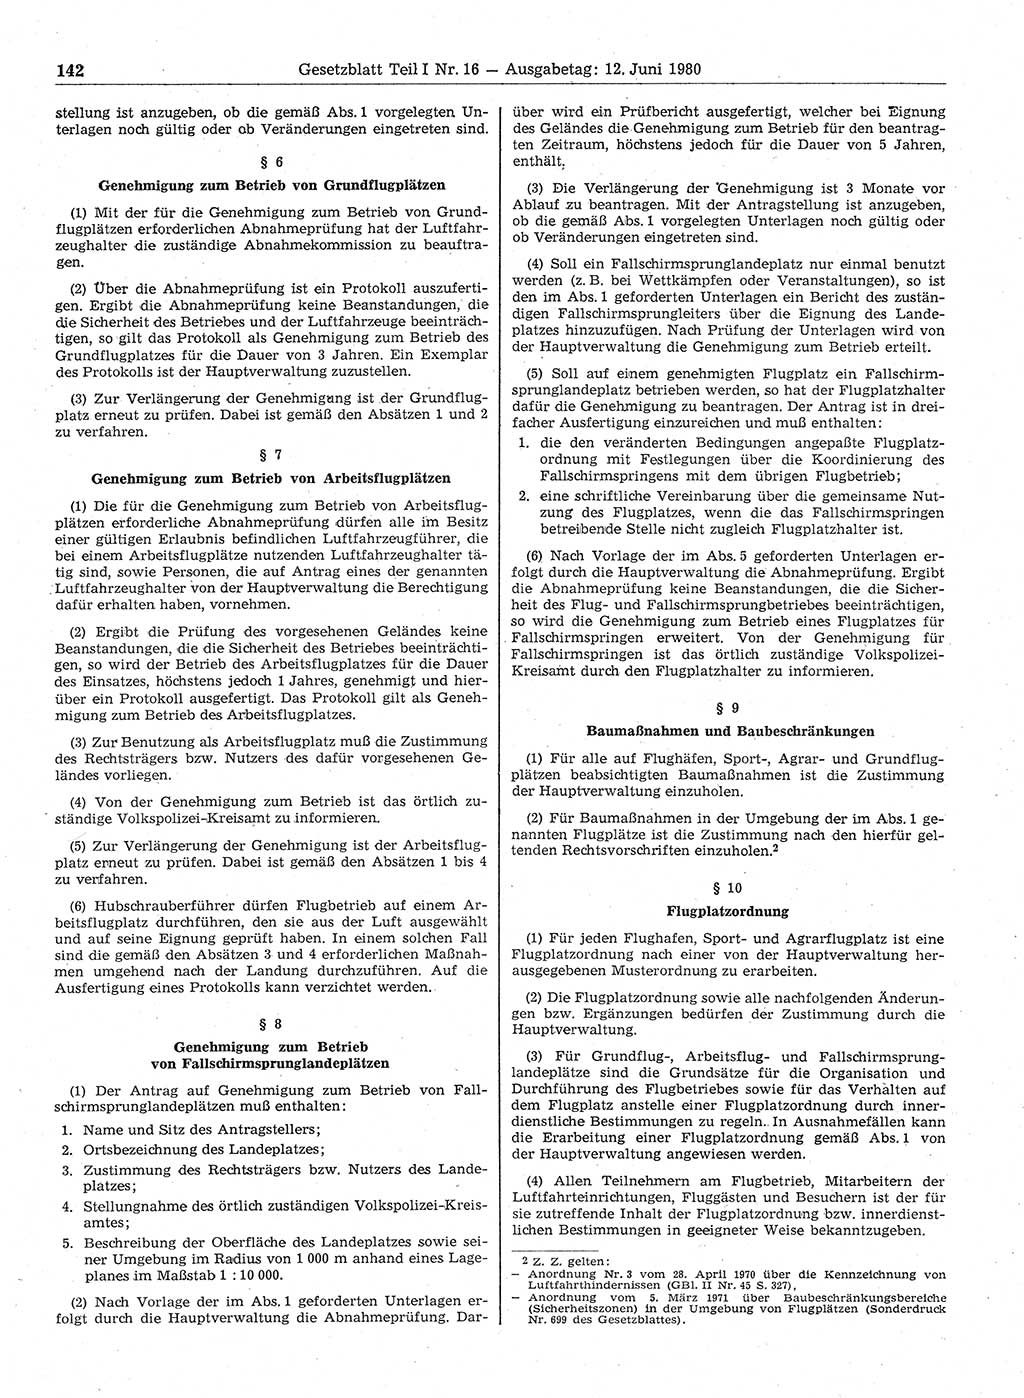 Gesetzblatt (GBl.) der Deutschen Demokratischen Republik (DDR) Teil Ⅰ 1980, Seite 142 (GBl. DDR Ⅰ 1980, S. 142)